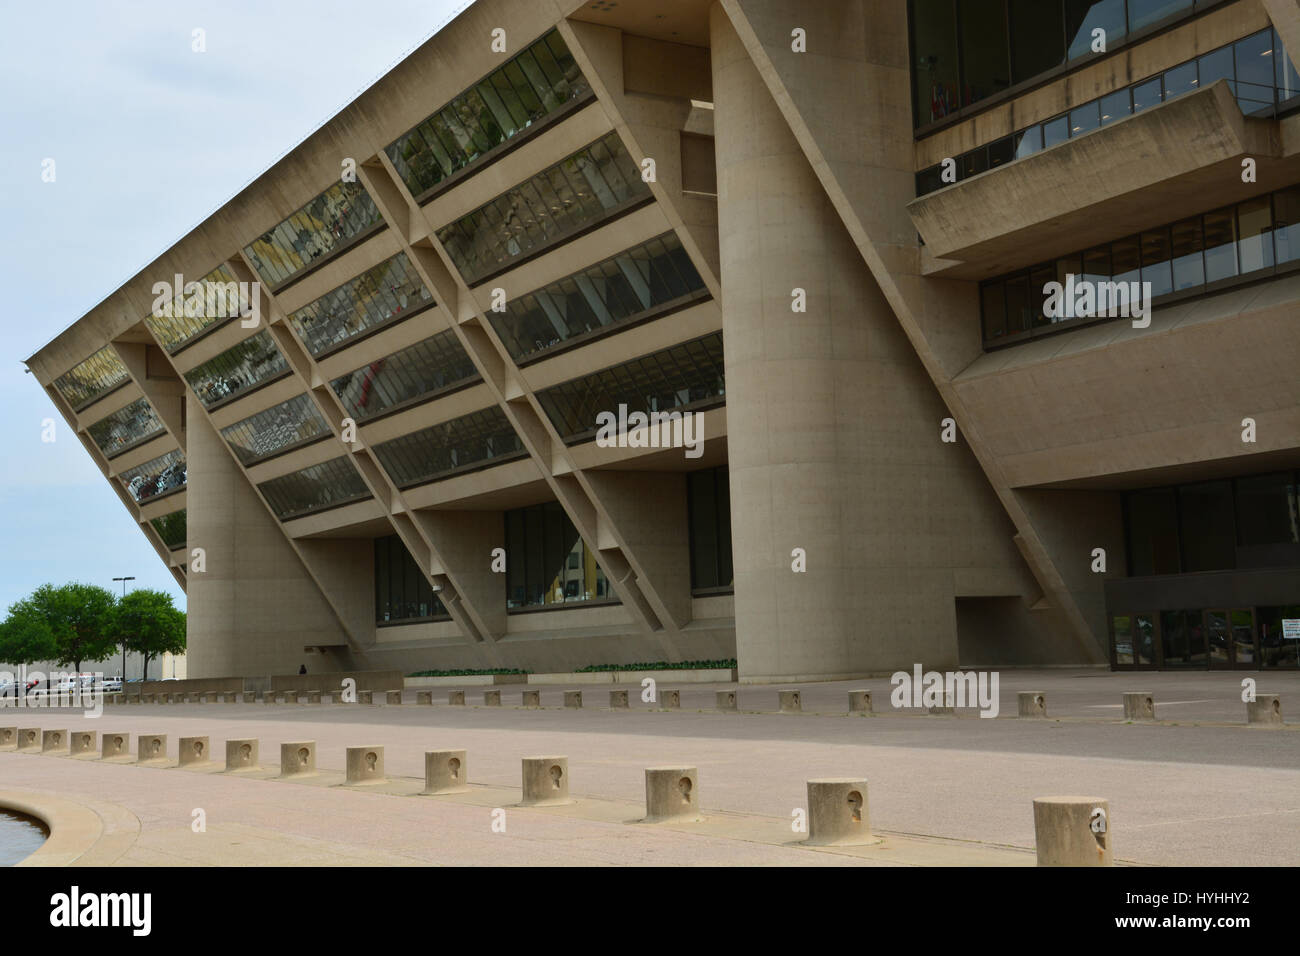 El Ayuntamiento de Dallas modernista fue construido en 1978 y diseñado por I.M. Pei. Foto de stock